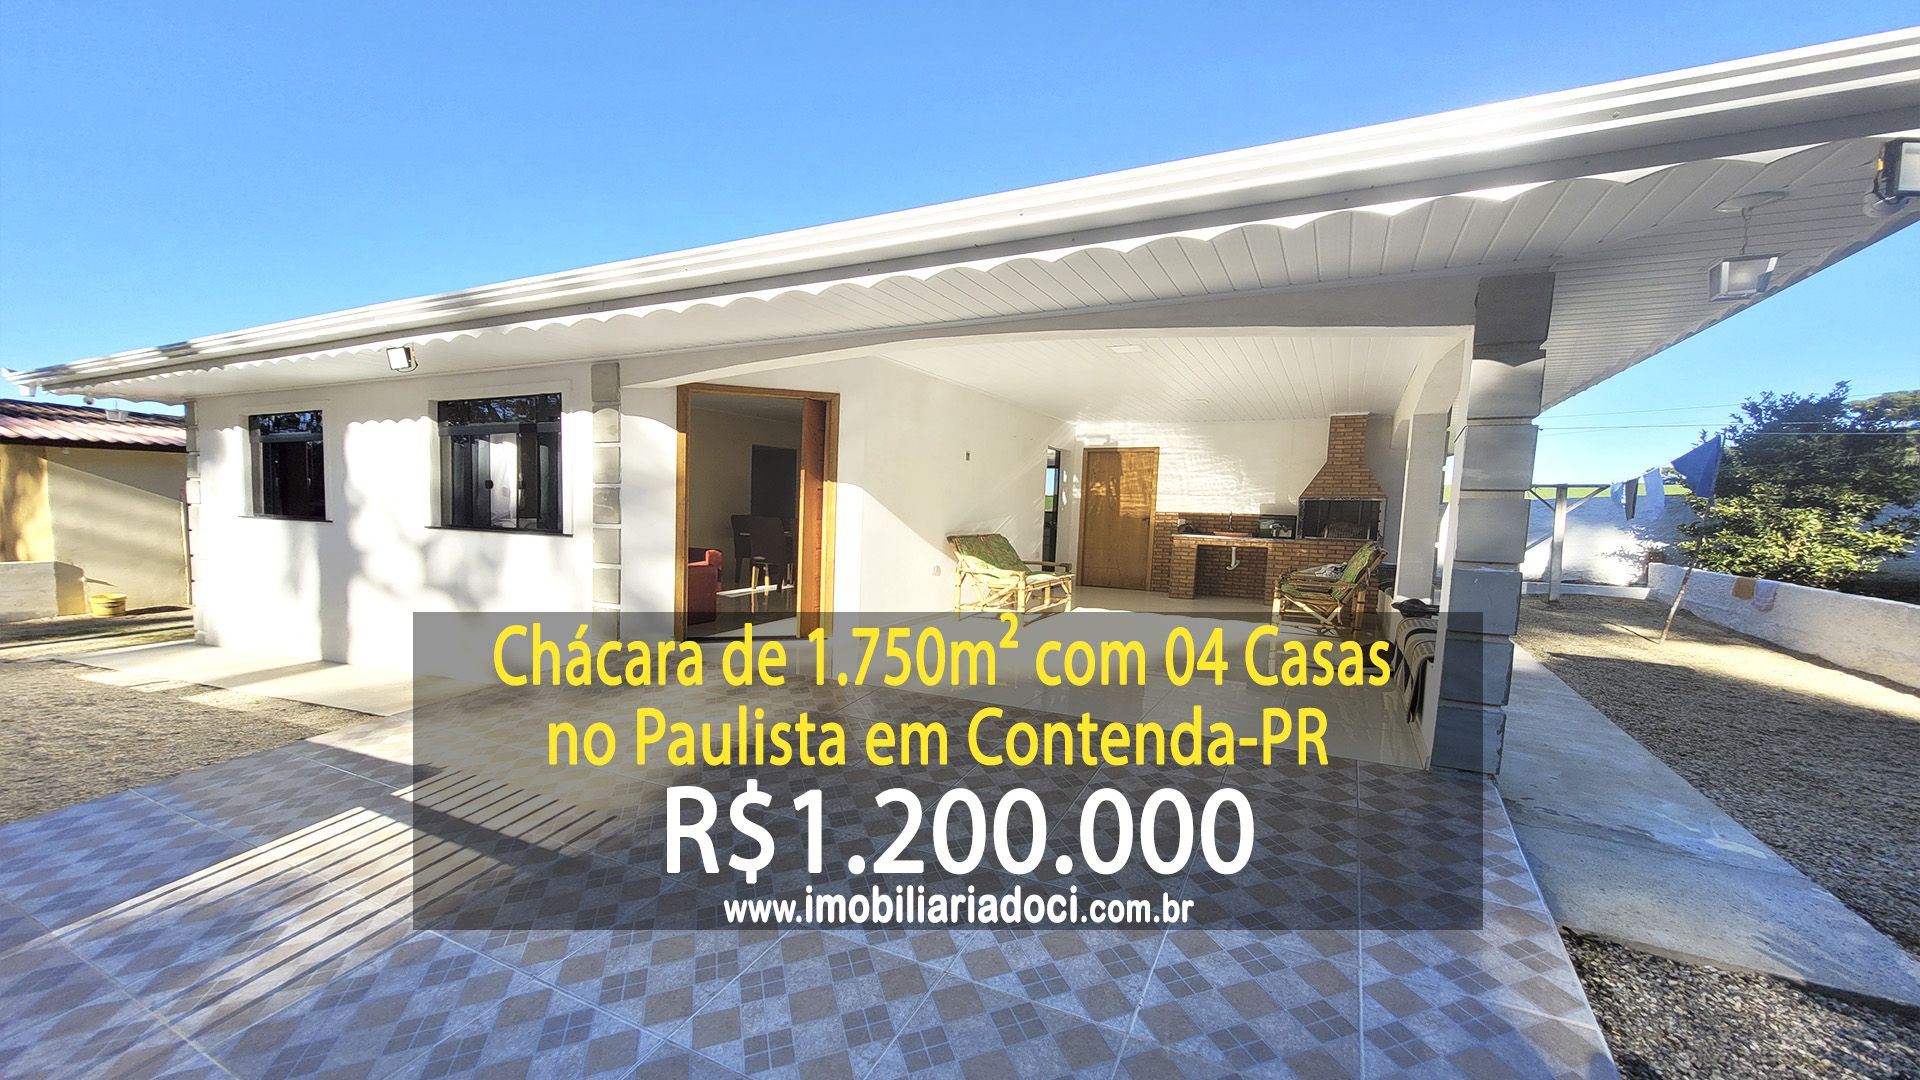 Chácara, 3 quartos, 1750 m² - Foto 1